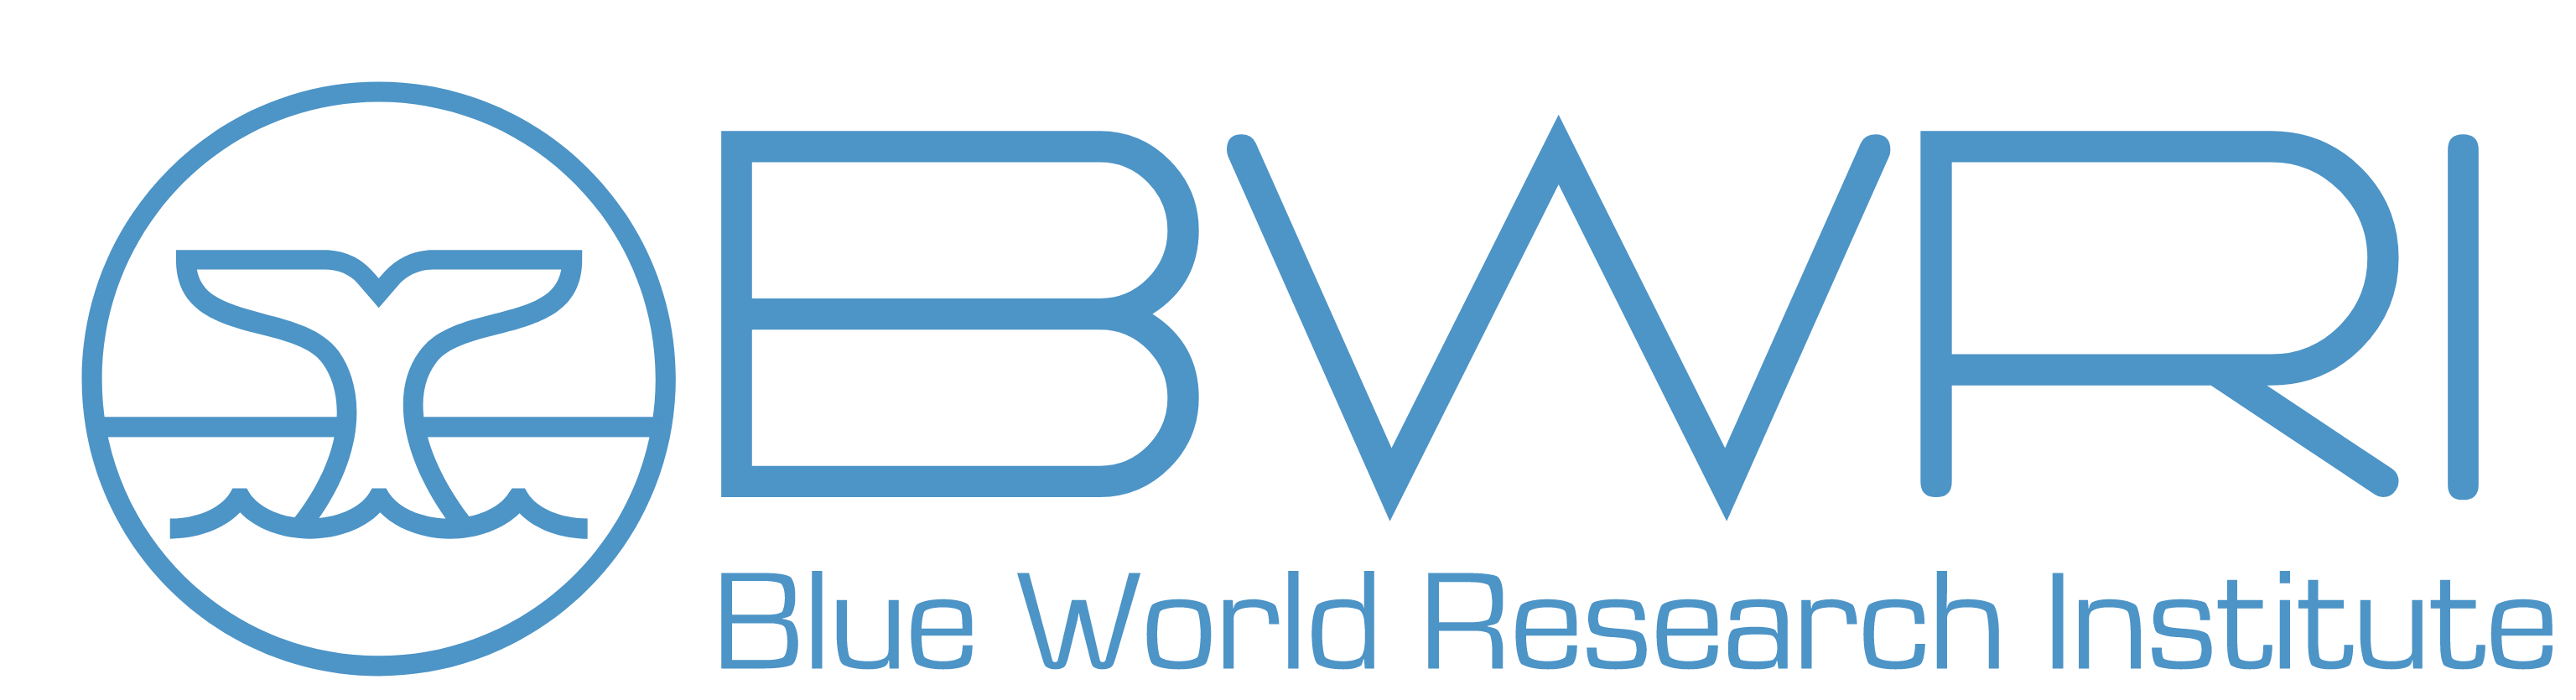 Blue World Research Institute